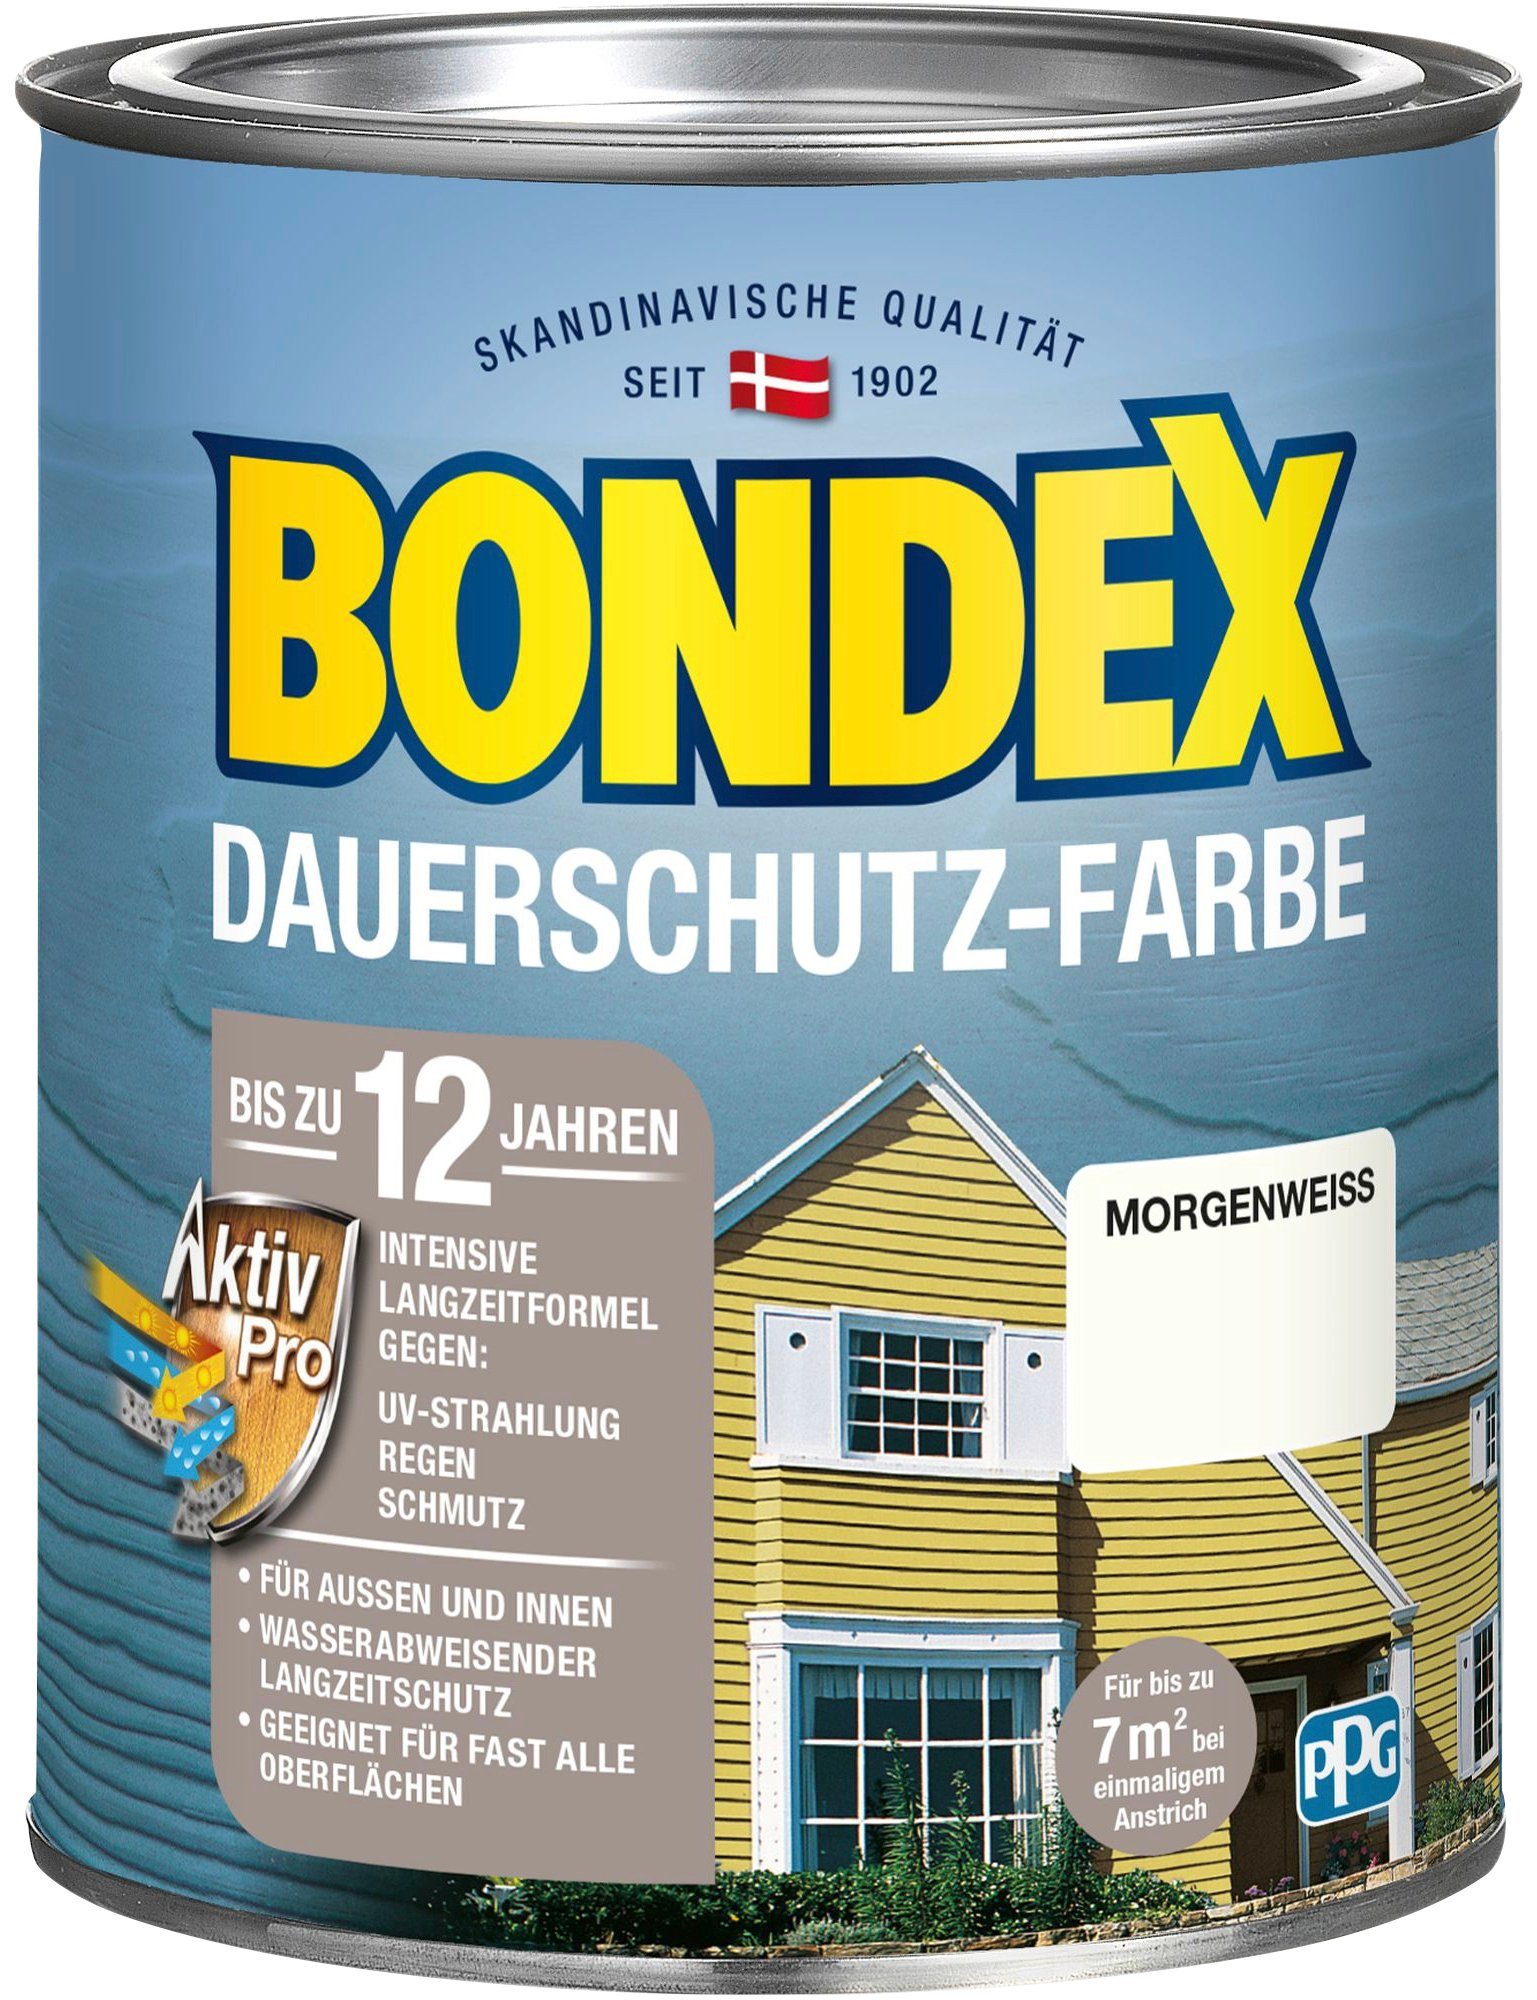 Bondex Wetterschutzfarbe DAUERSCHUTZ-FARBE, für Außen und Innen, Wetterschutz mit Aktiv Pro Langzeitformel Morgenweiß